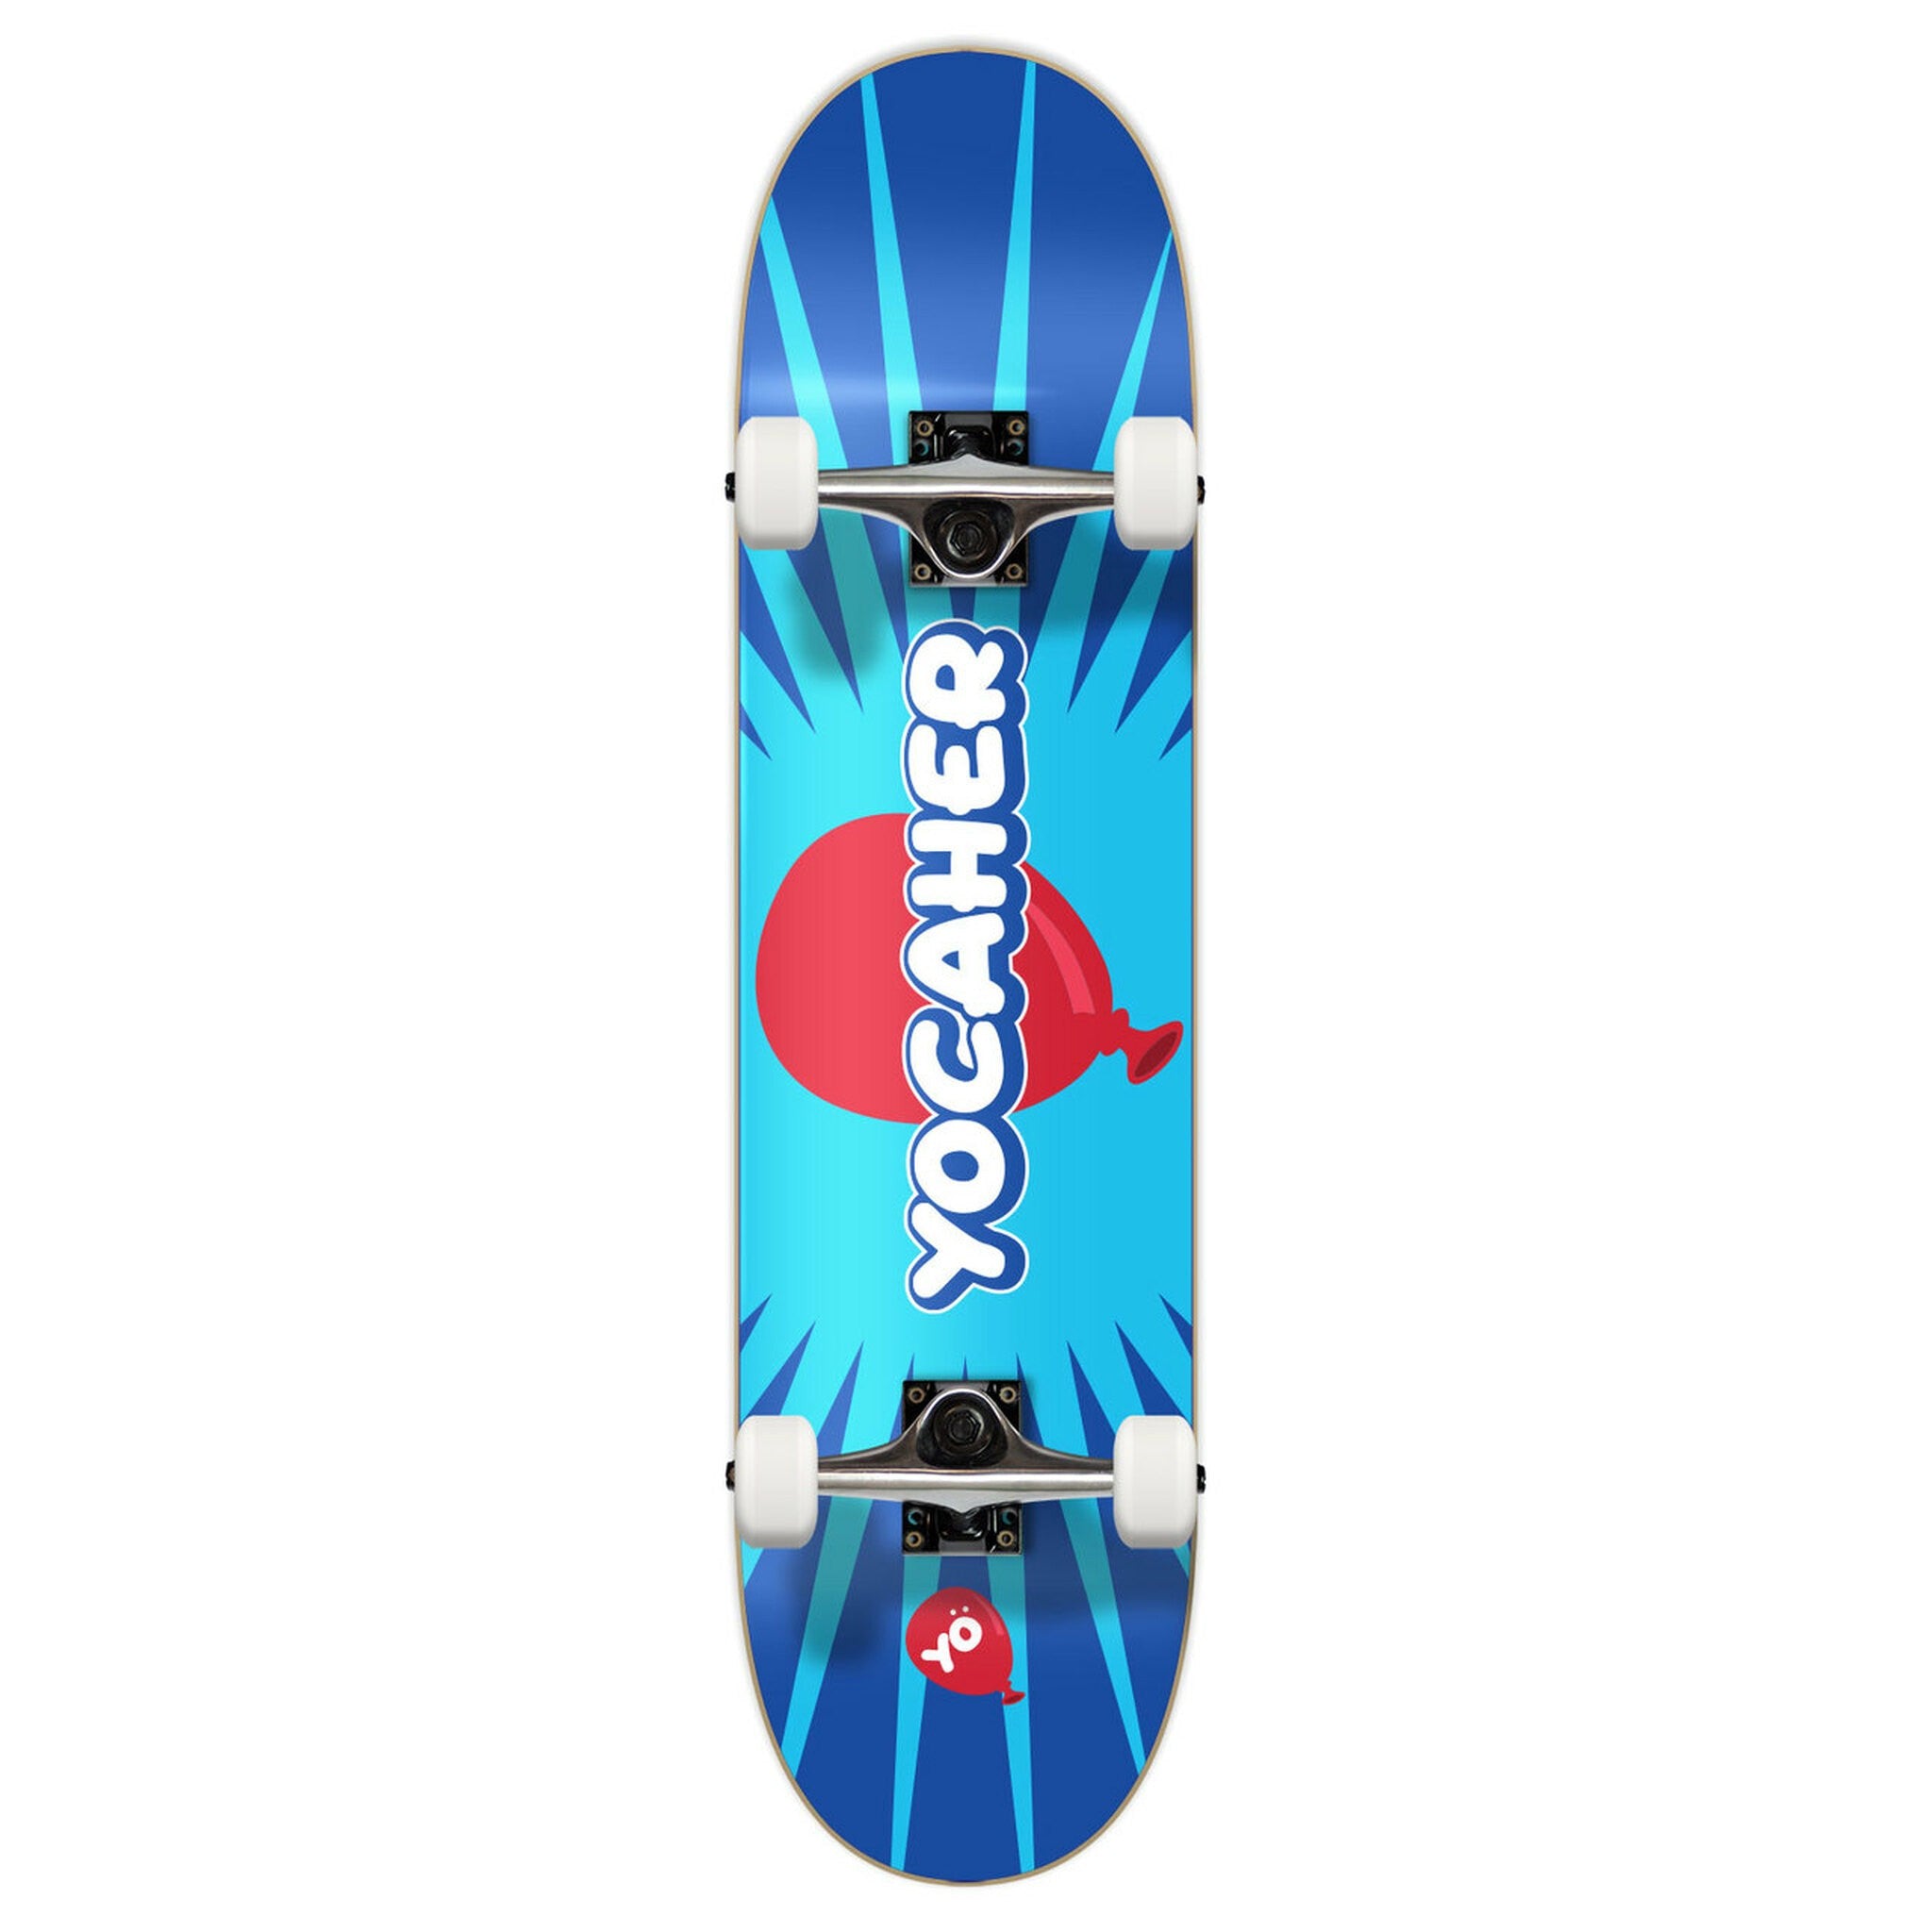 YOCAHER Pop - Street Skateboard - Complete Board